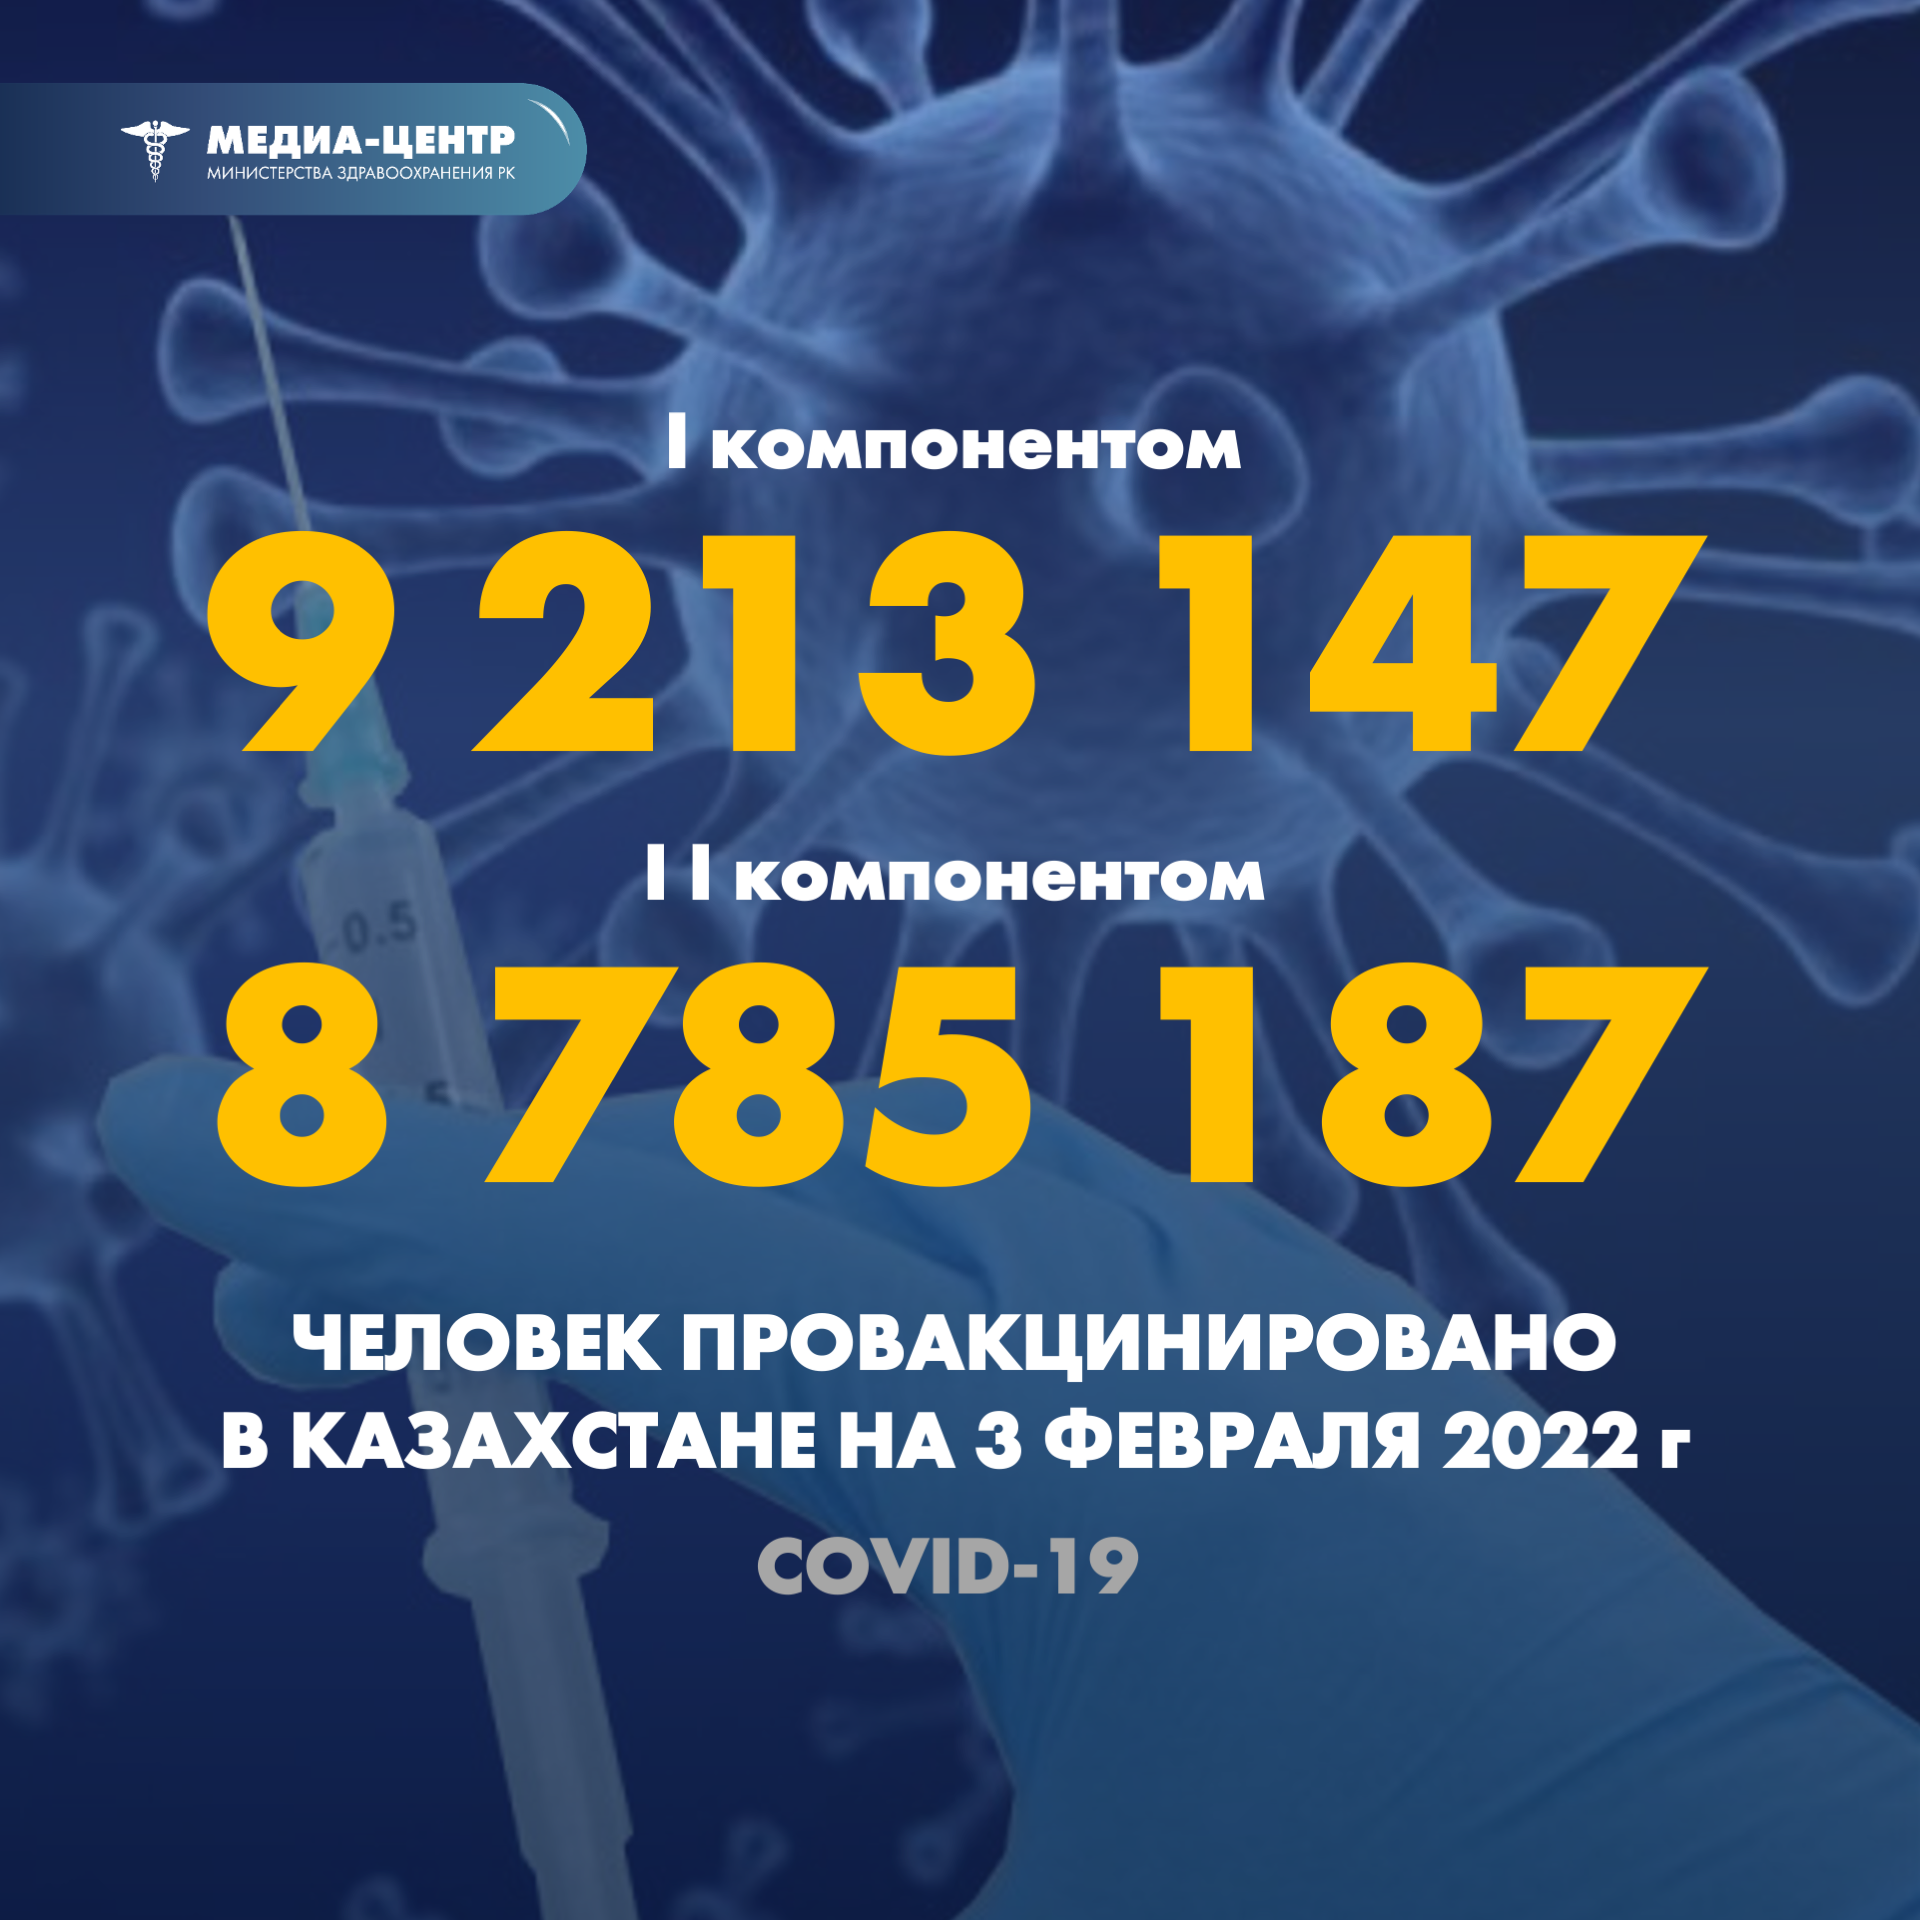 Количество людей, получивших вакцину PFIZER в Казахстане по состоянию на 3 февраля 2022 года